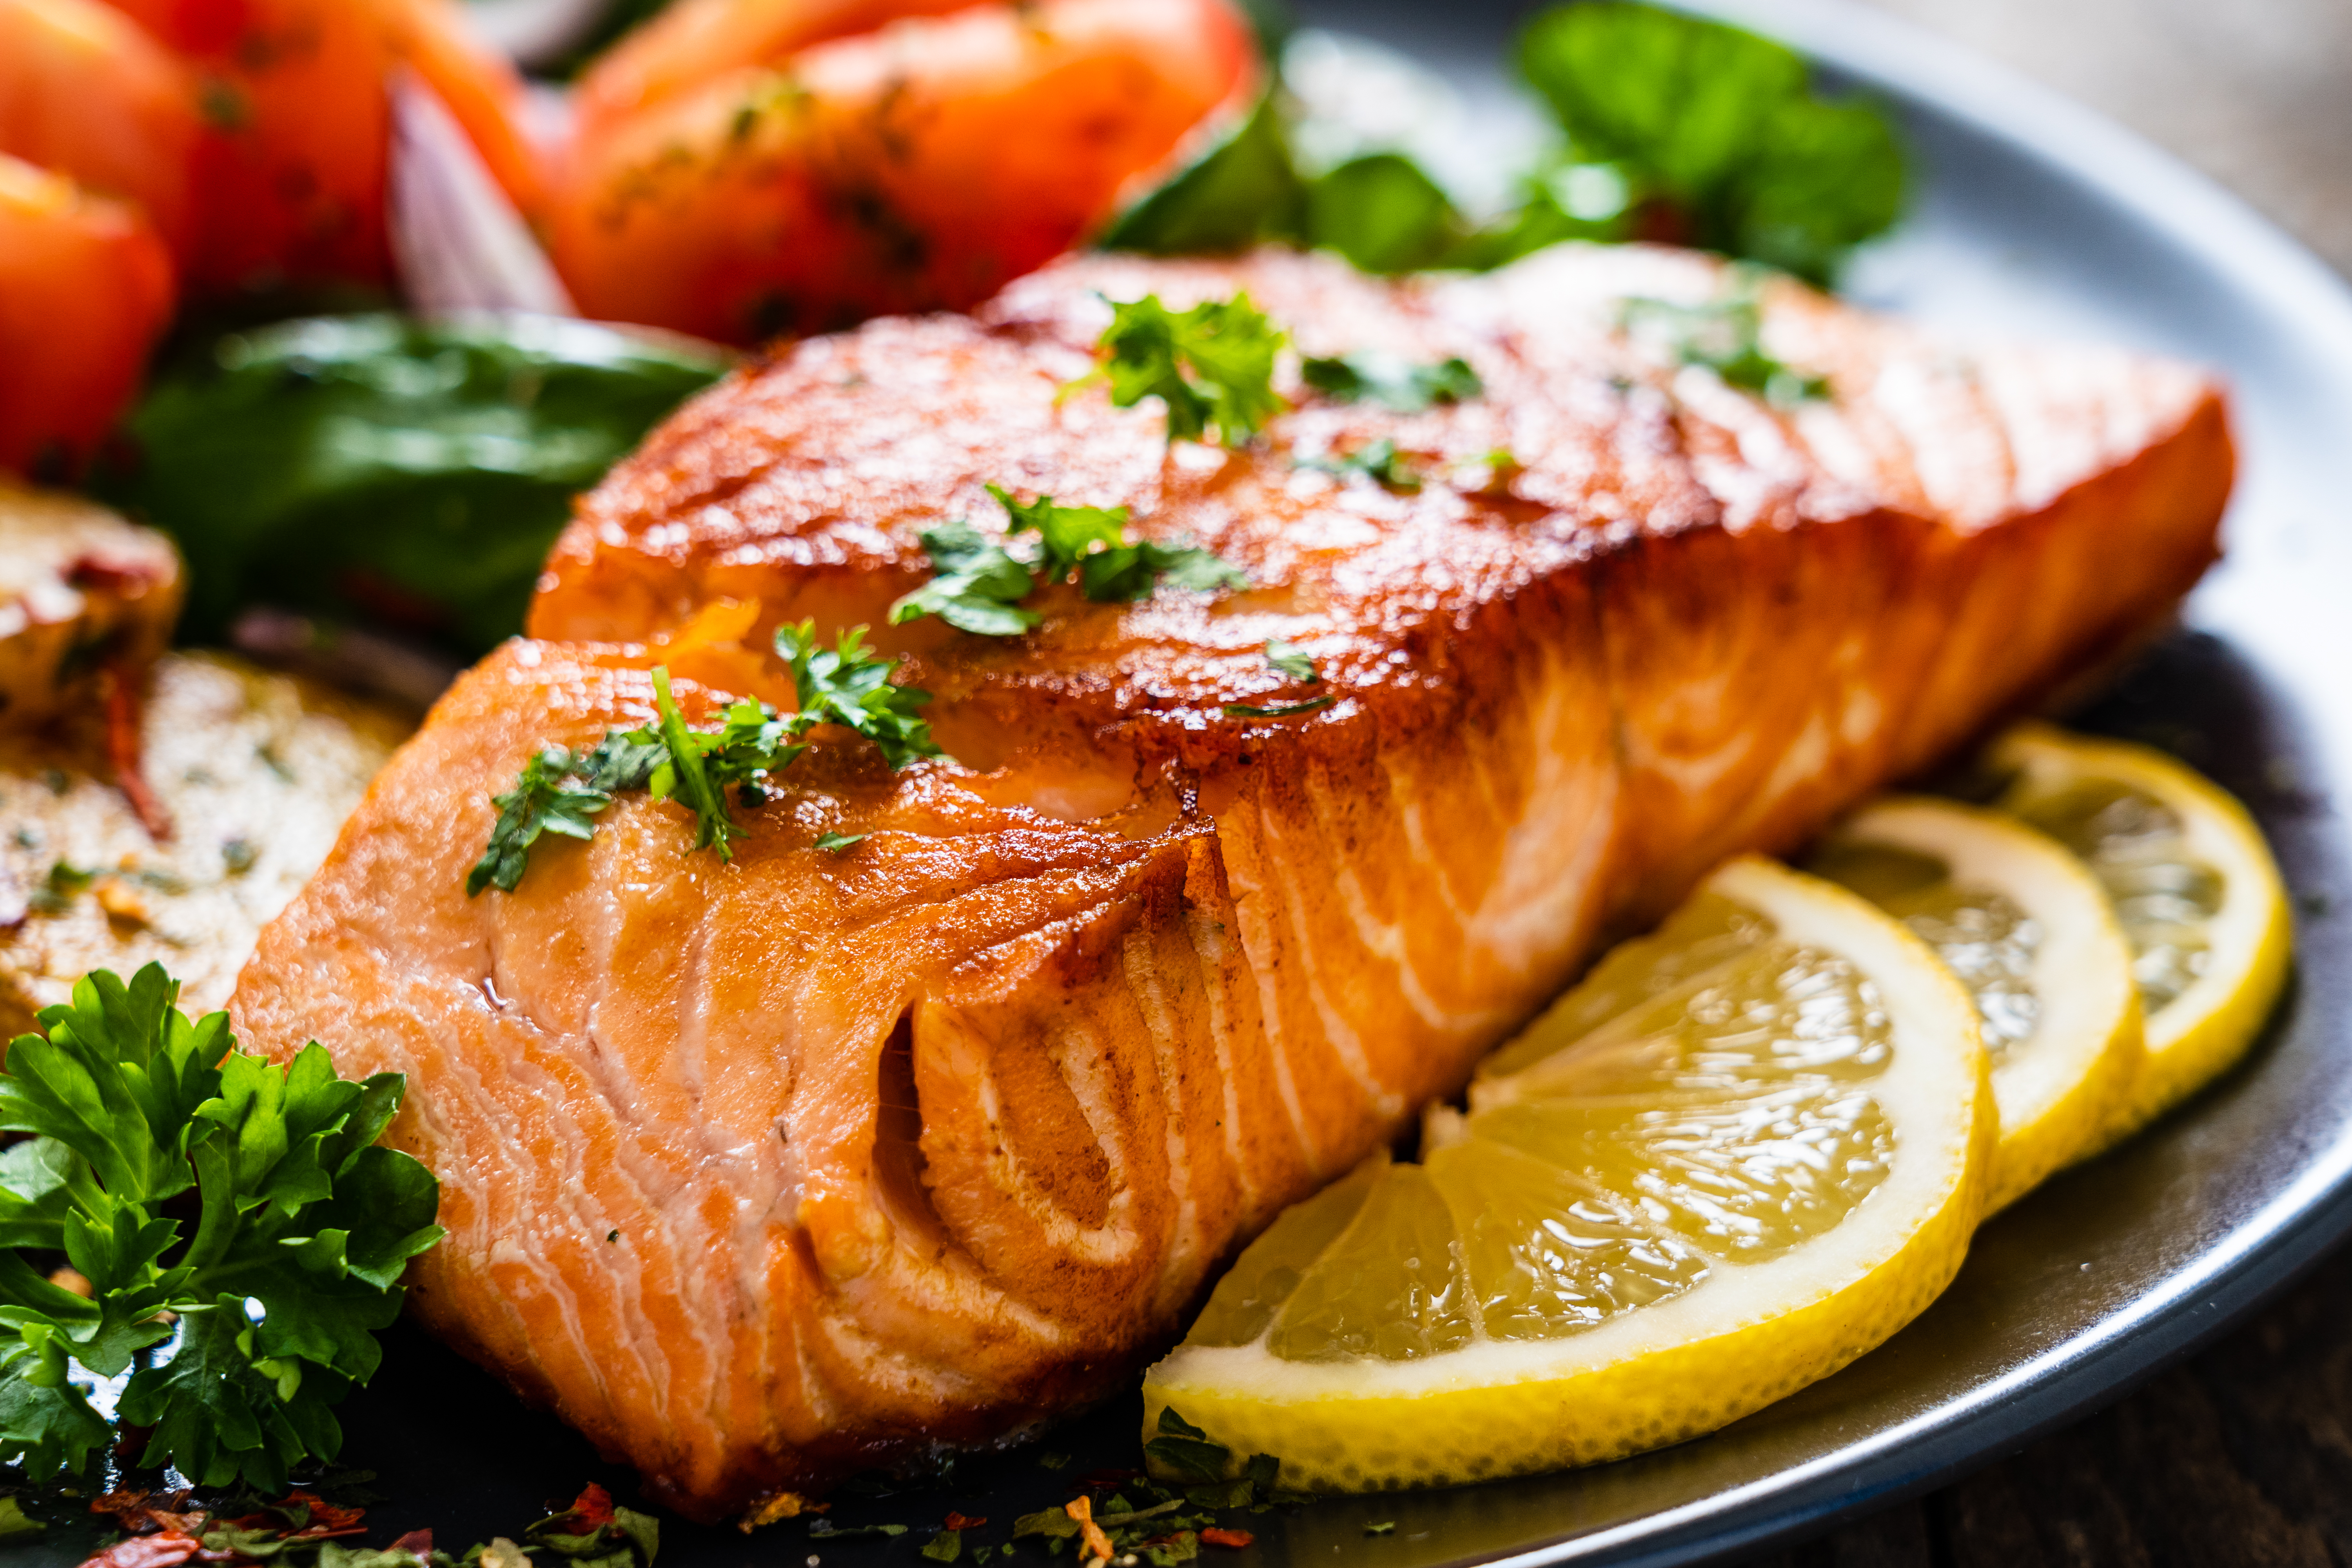 <p><strong>2. Мазни риби</strong></p>

<p>Мазните риби като сьомга и риба тон са добри източници на протеини, мастни киселини и витамини от група В, което ги прави чудесни за всяка диета. Порция сьомга или риба тон осигурява препоръчителното дневно количество омега-3 мастни киселини и витамин В12. Доказано е, че омега-3 мастните киселини намаляват възпалителните процеси в организма, които често са причина за умора.</p>